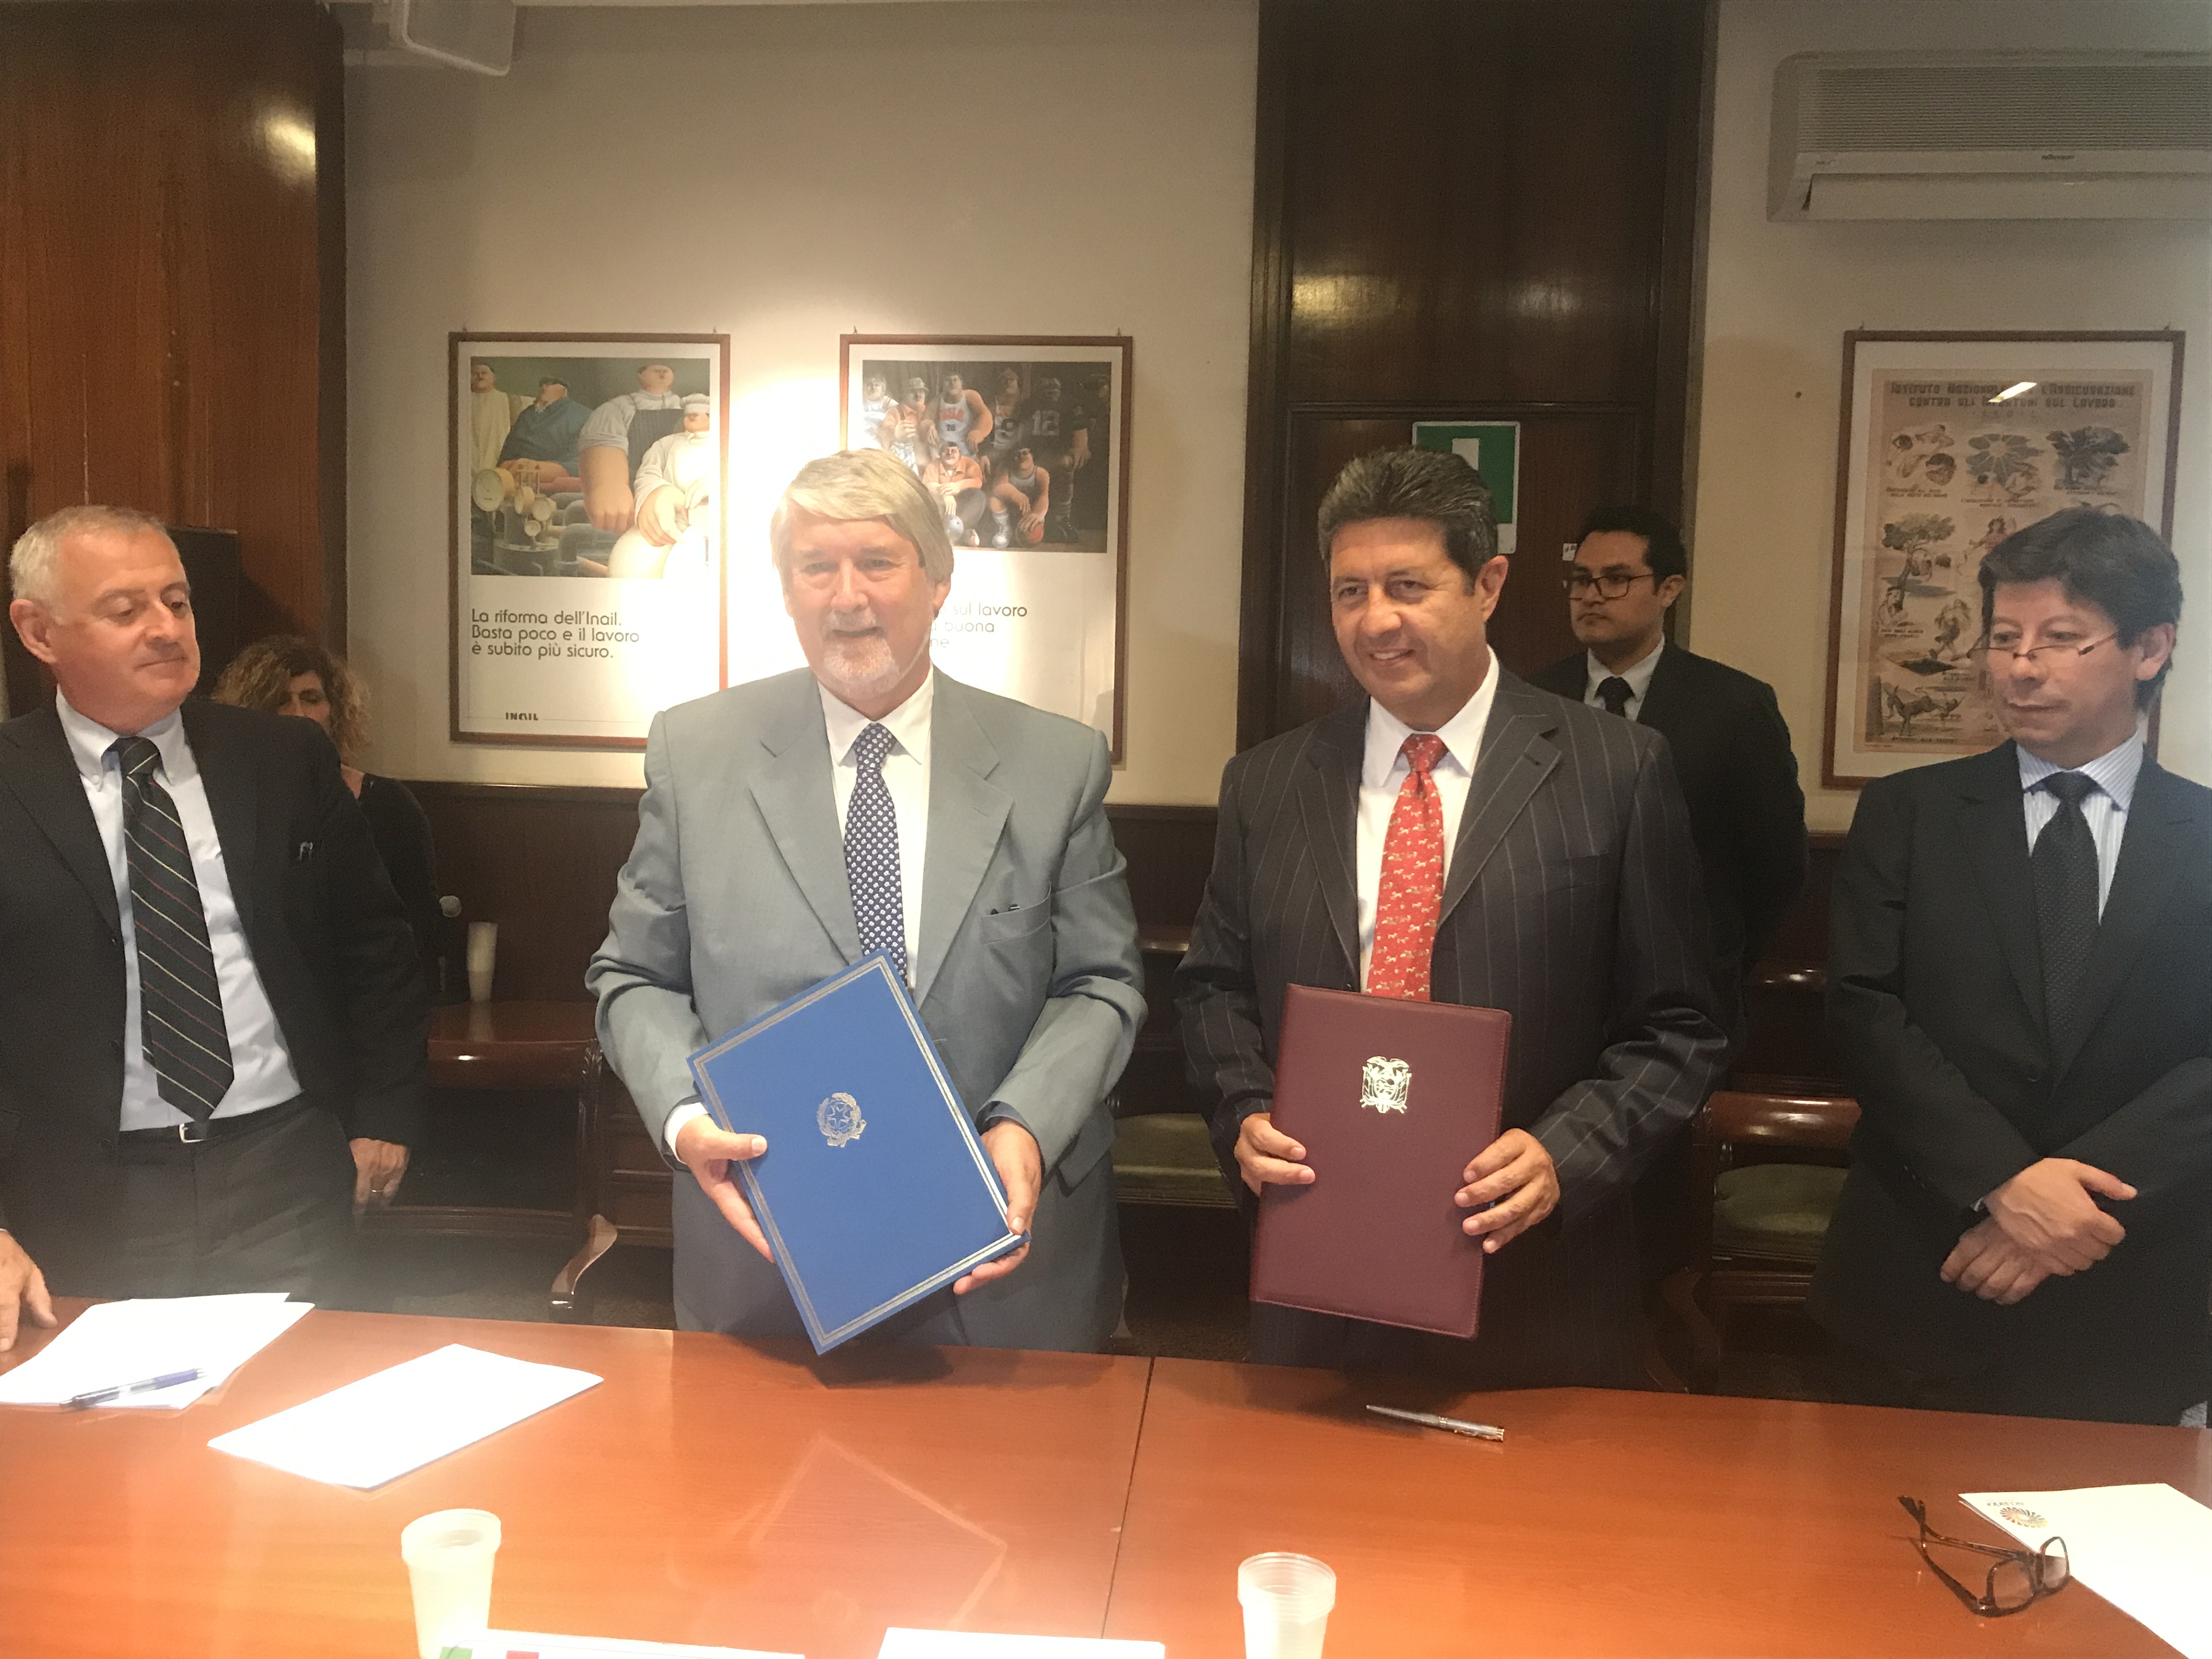 Ecuador e Italia firman documento de cooperación